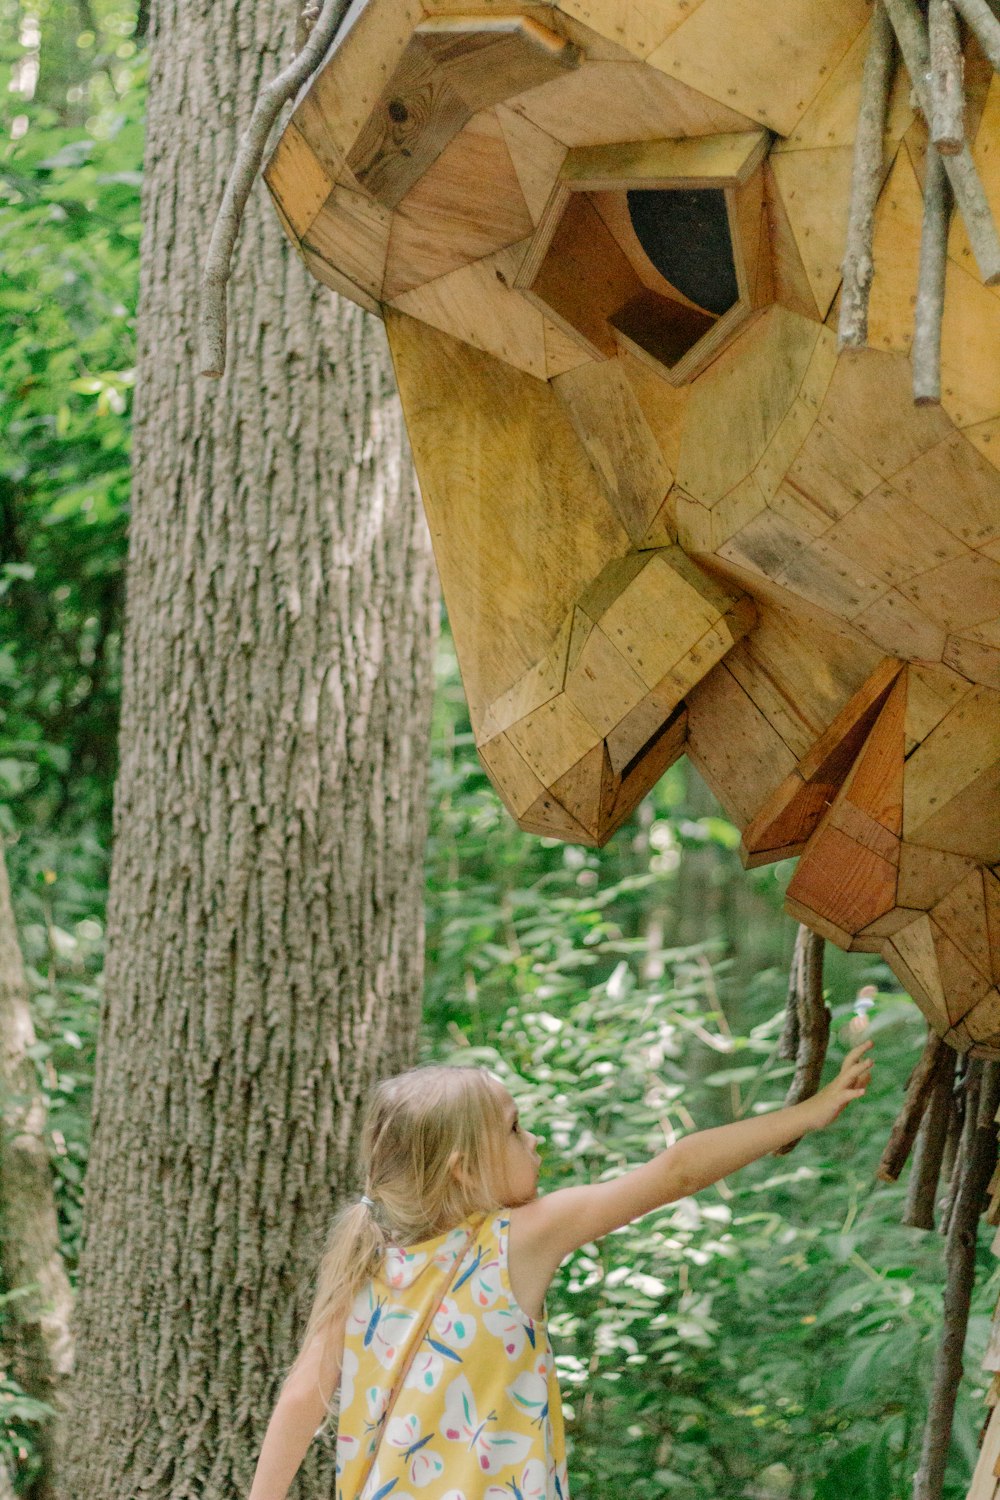 a little girl reaching up to a wooden sculpture